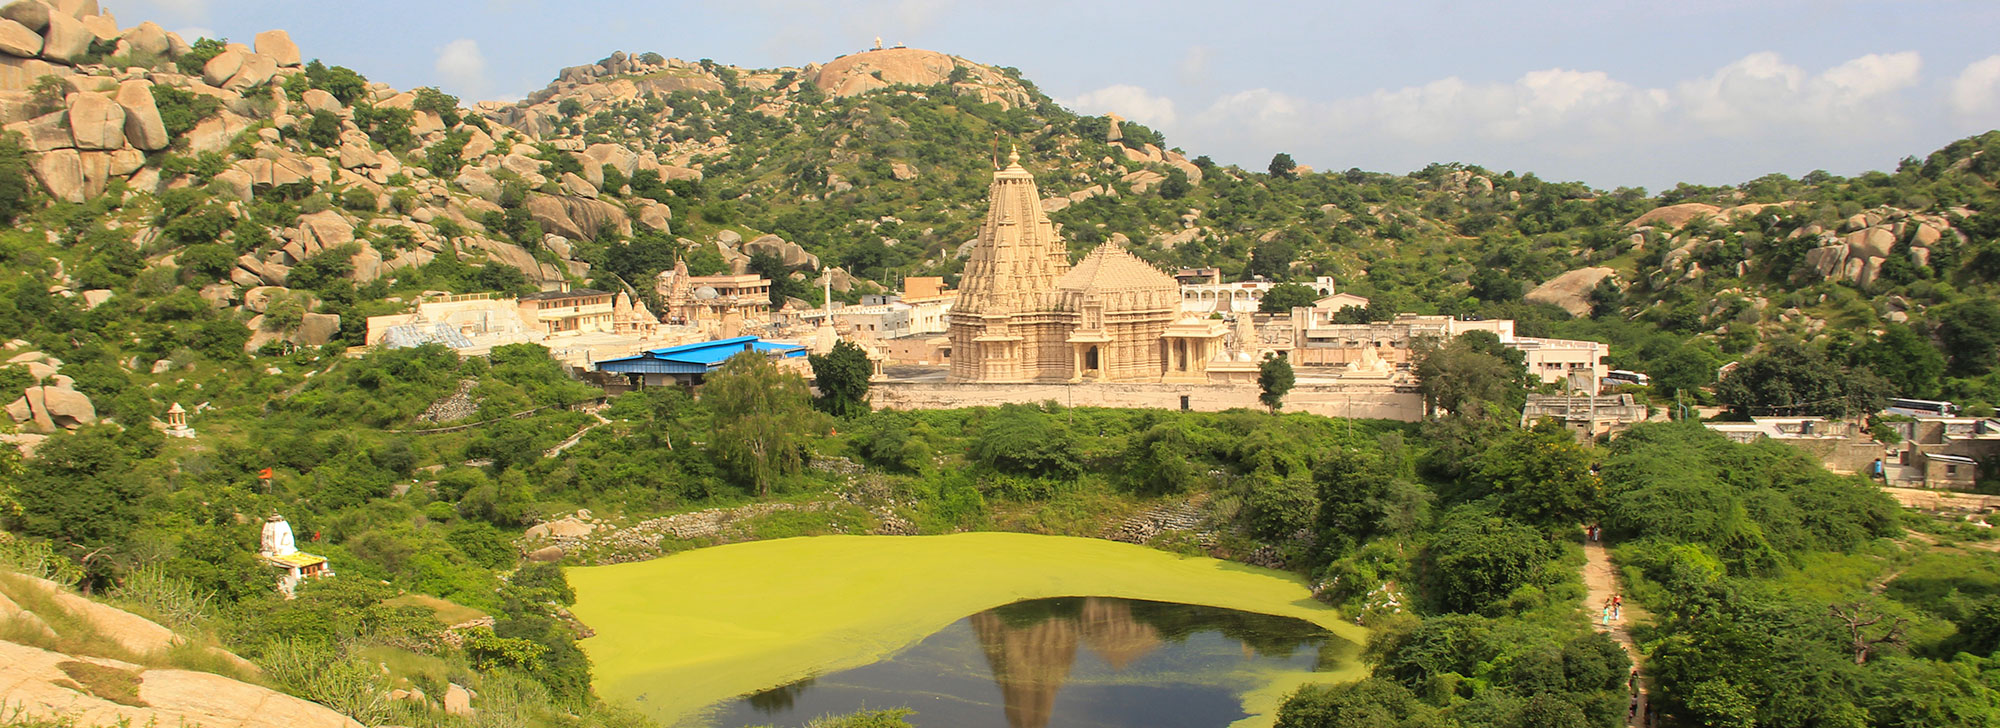 Taranga (Hill) Jain Temple